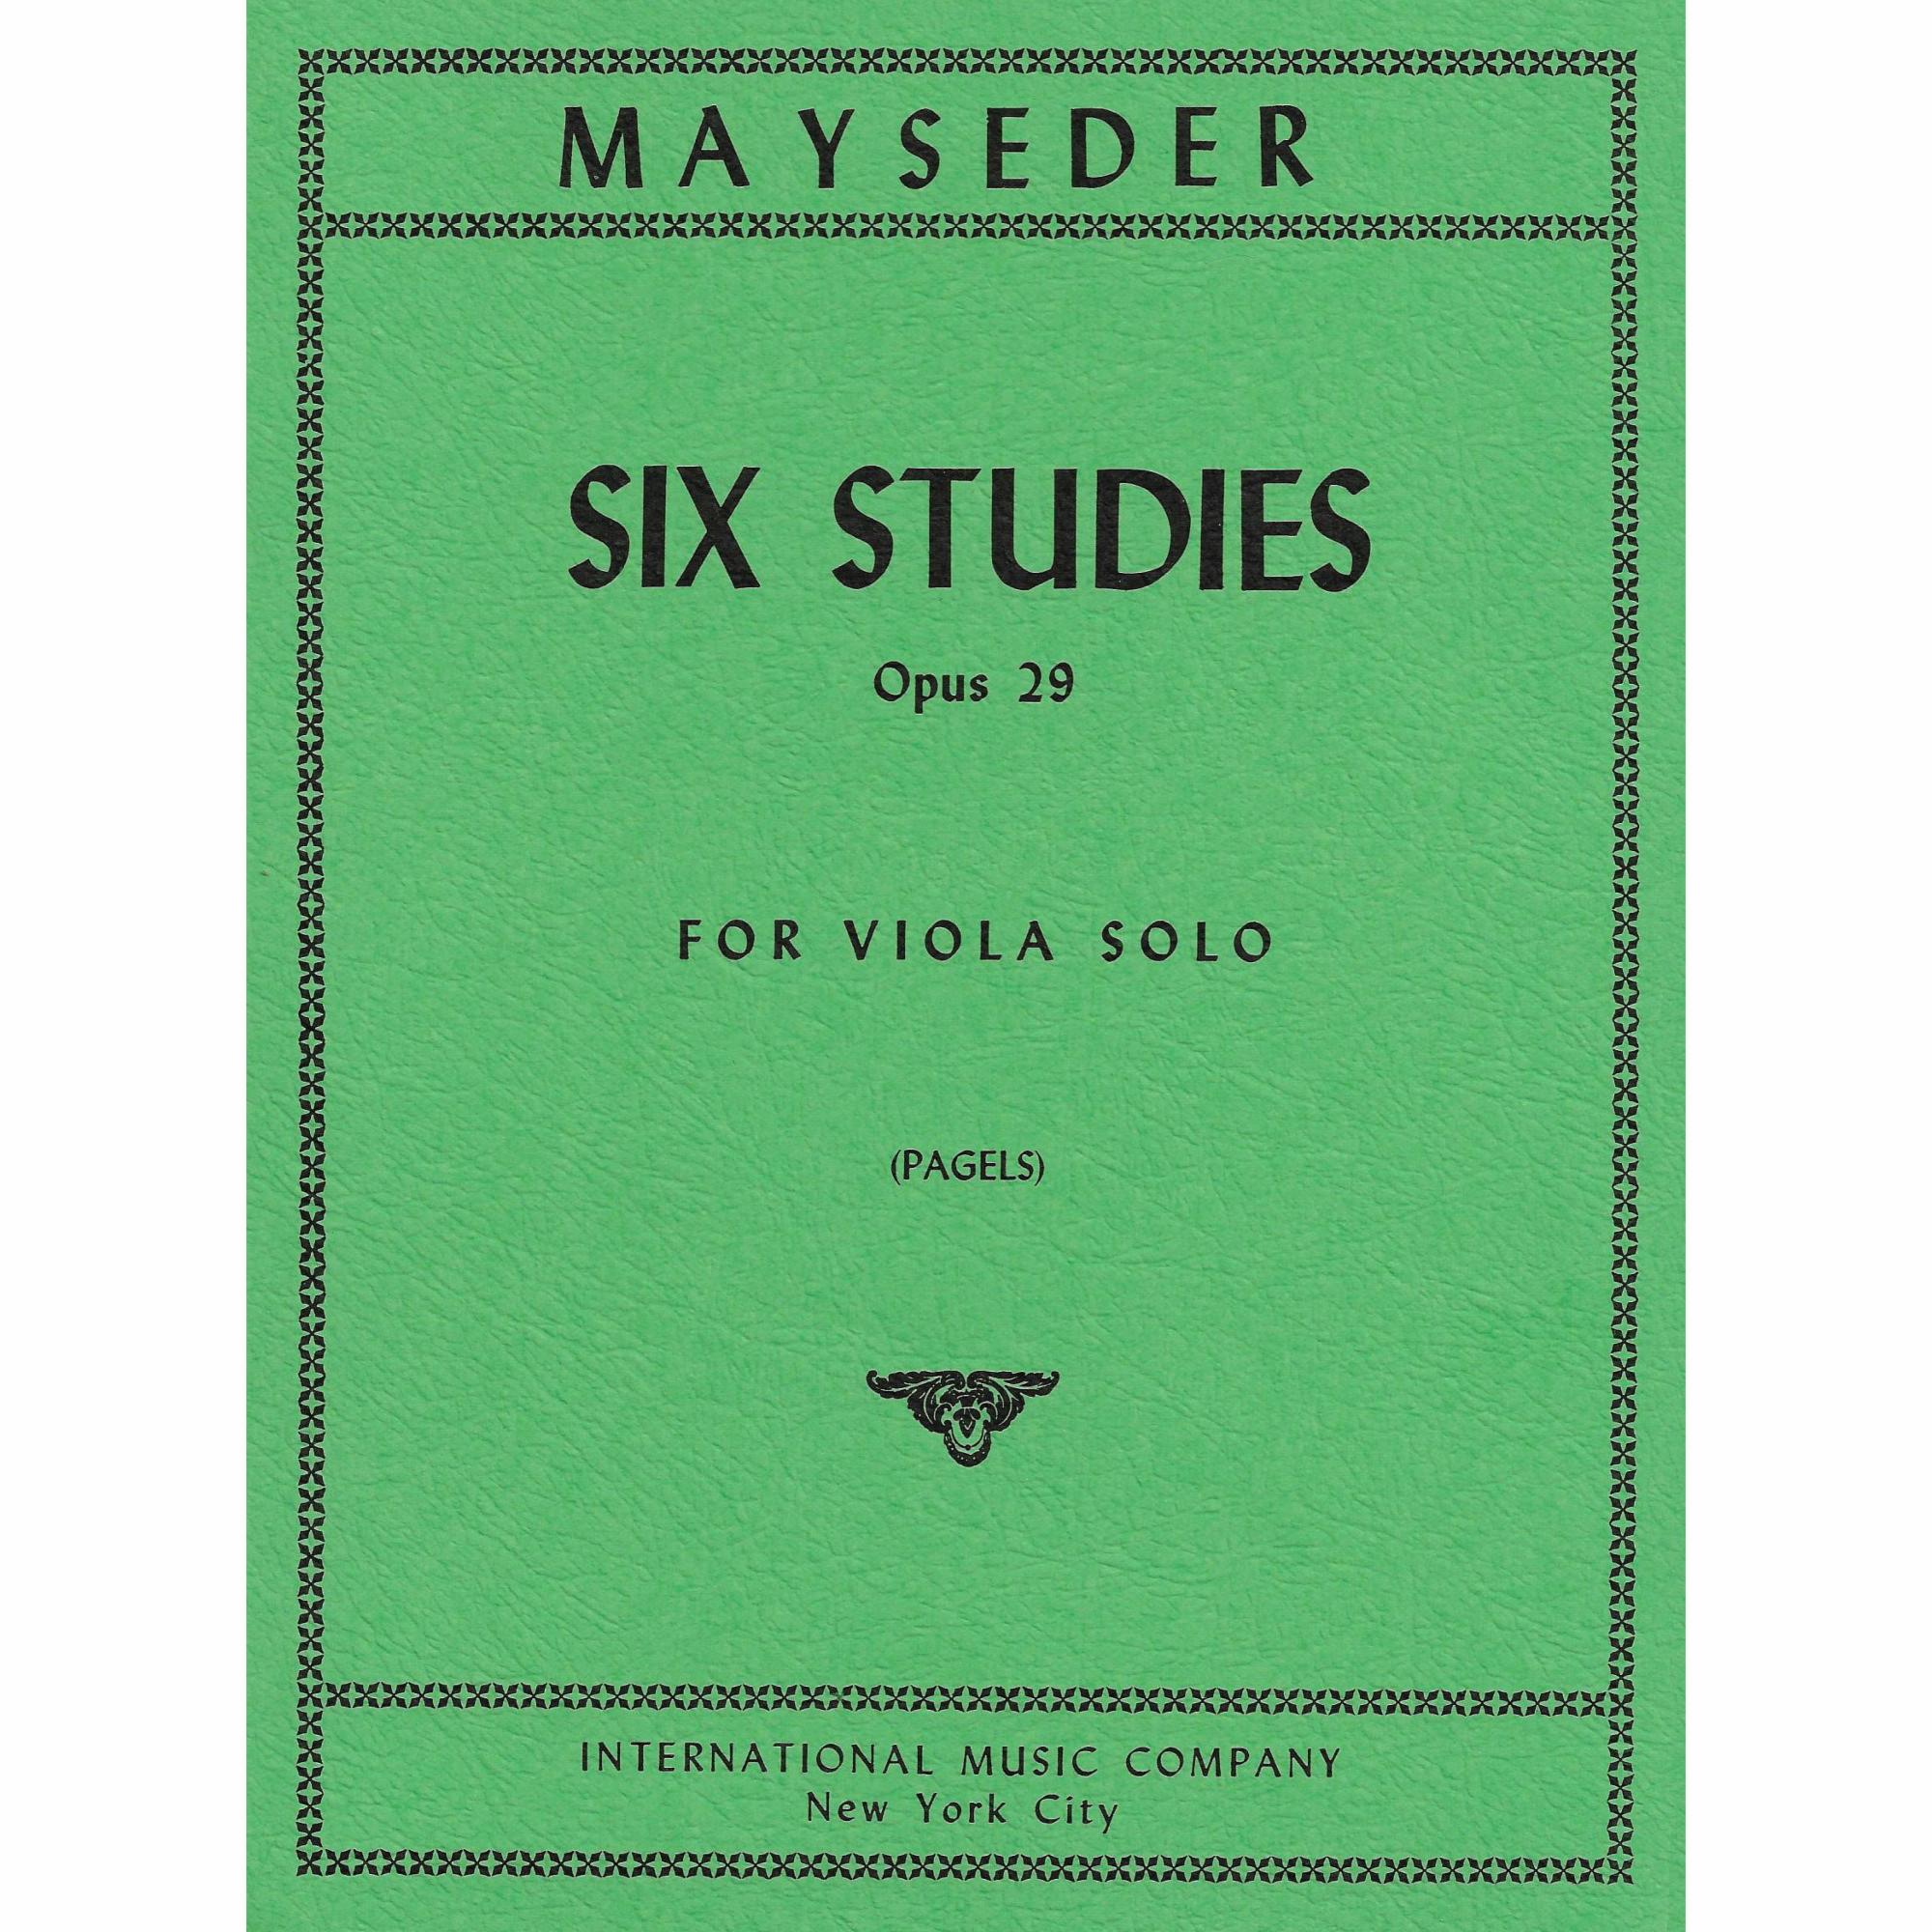 Mayseder -- Six Studies, Op. 29 for Viola